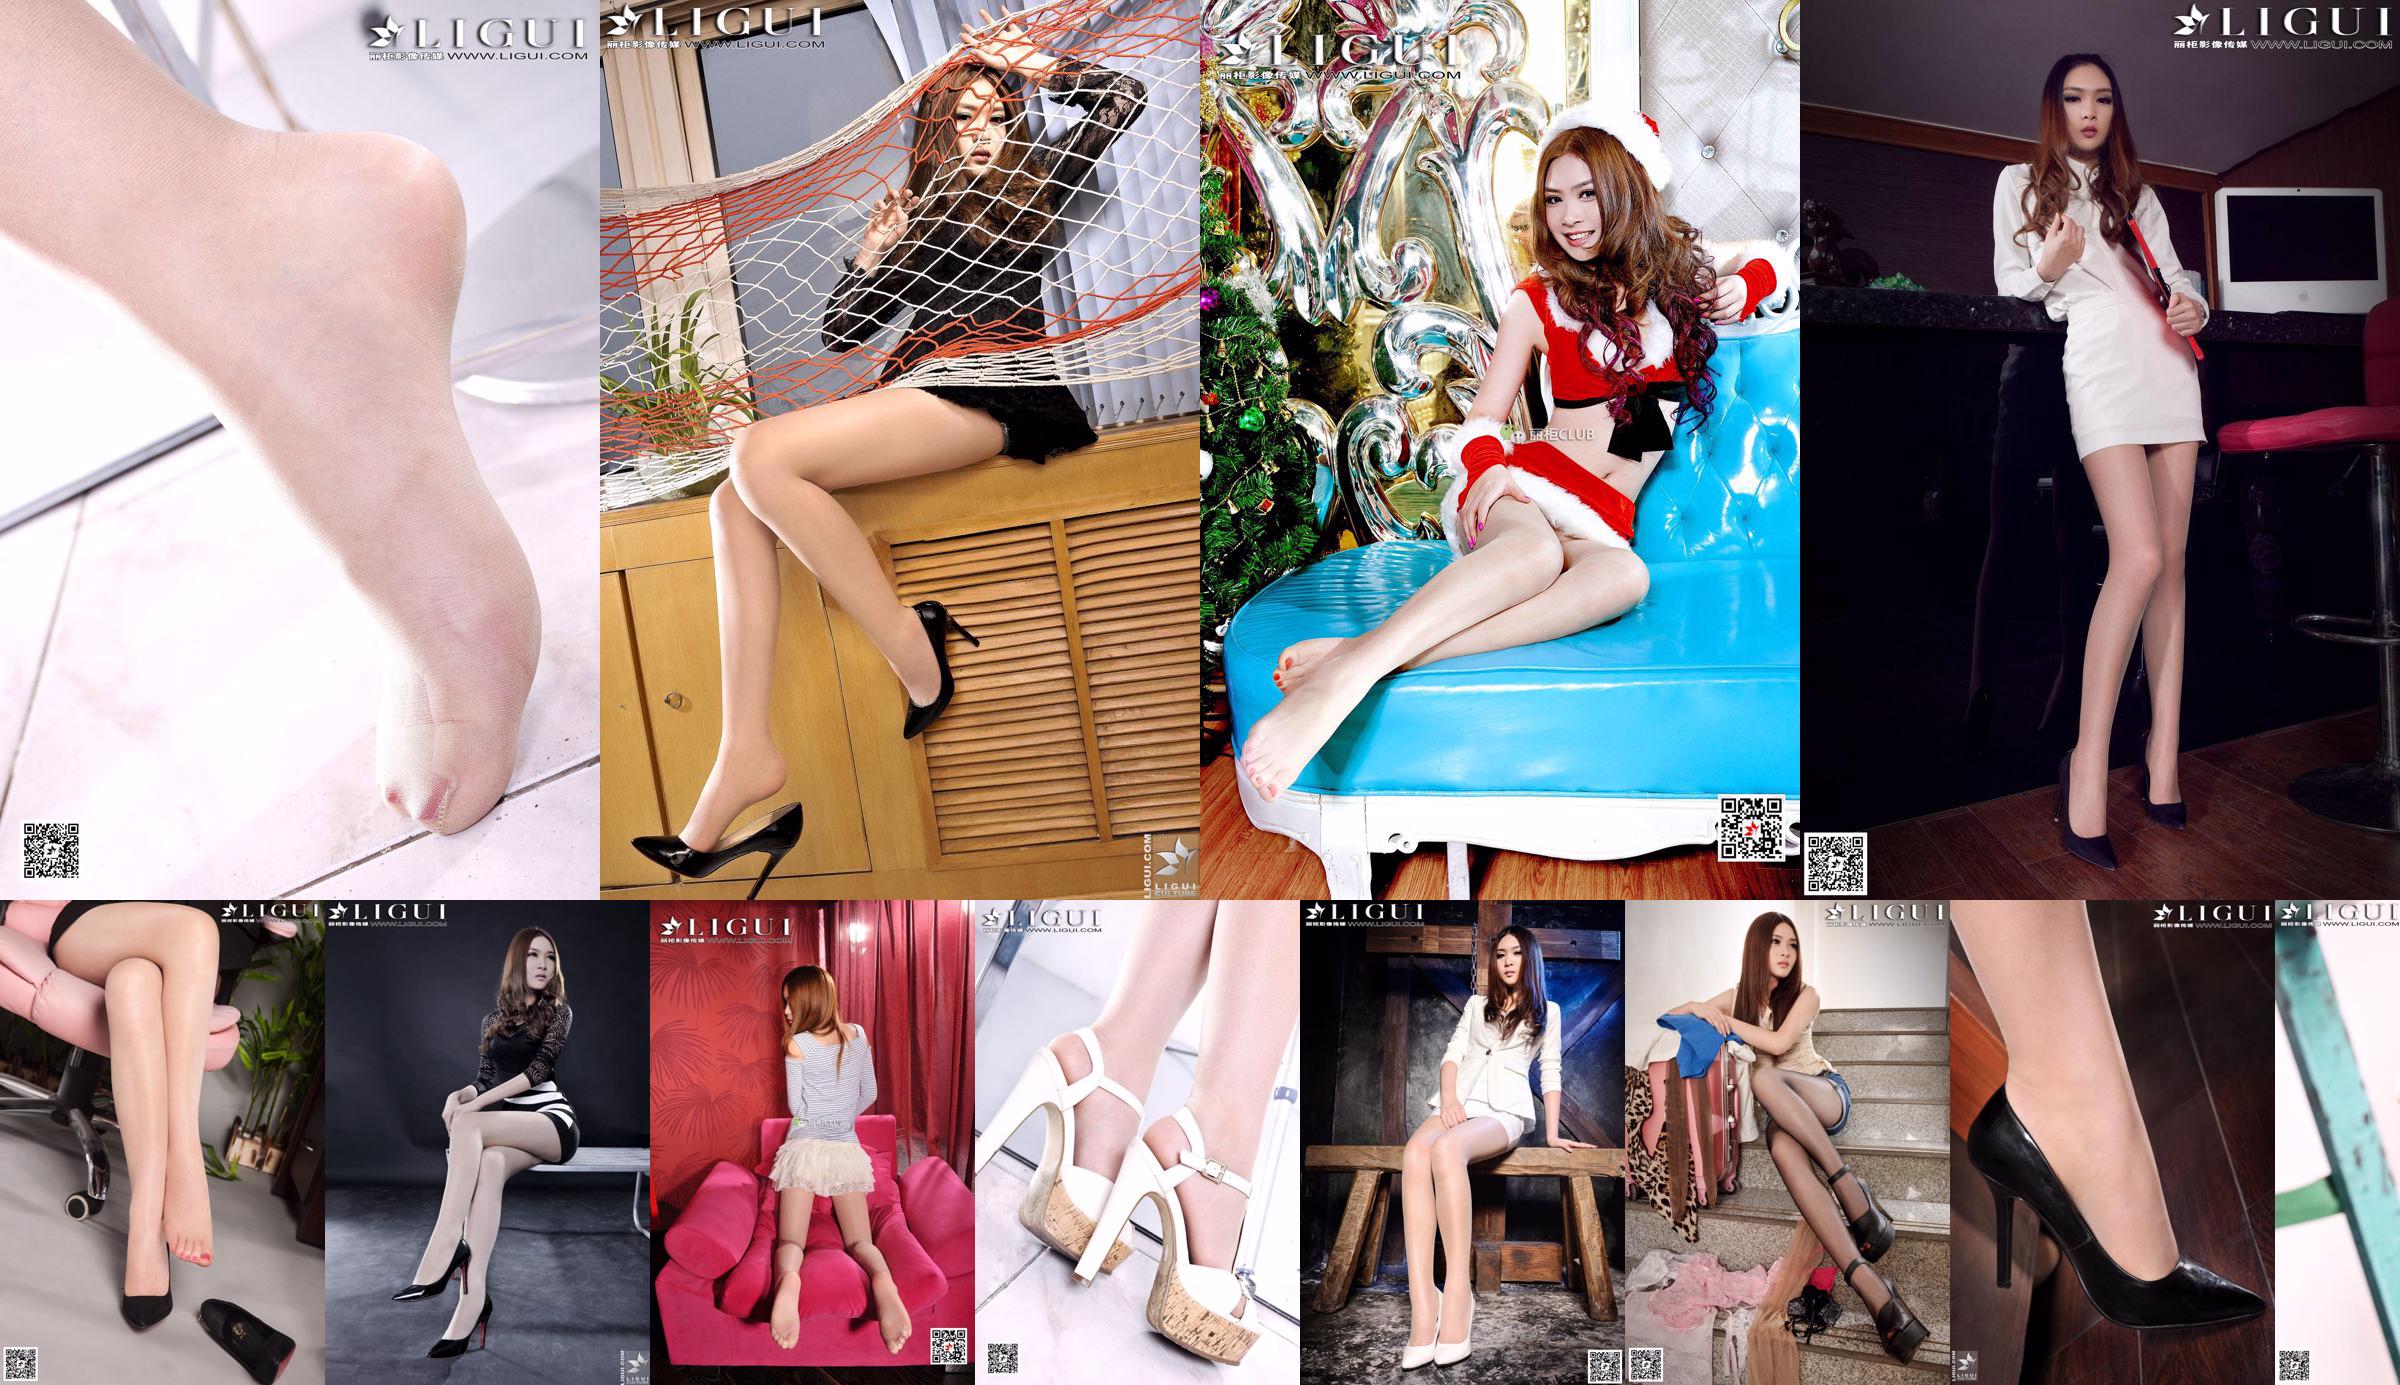 Model Yoonas "Denim Hot Pants, High-Heels Feet" Sämtliche Arbeiten [Ligui Guizu] Foto von schönen Beinen und Jadefüßen No.26e331 Seite 16